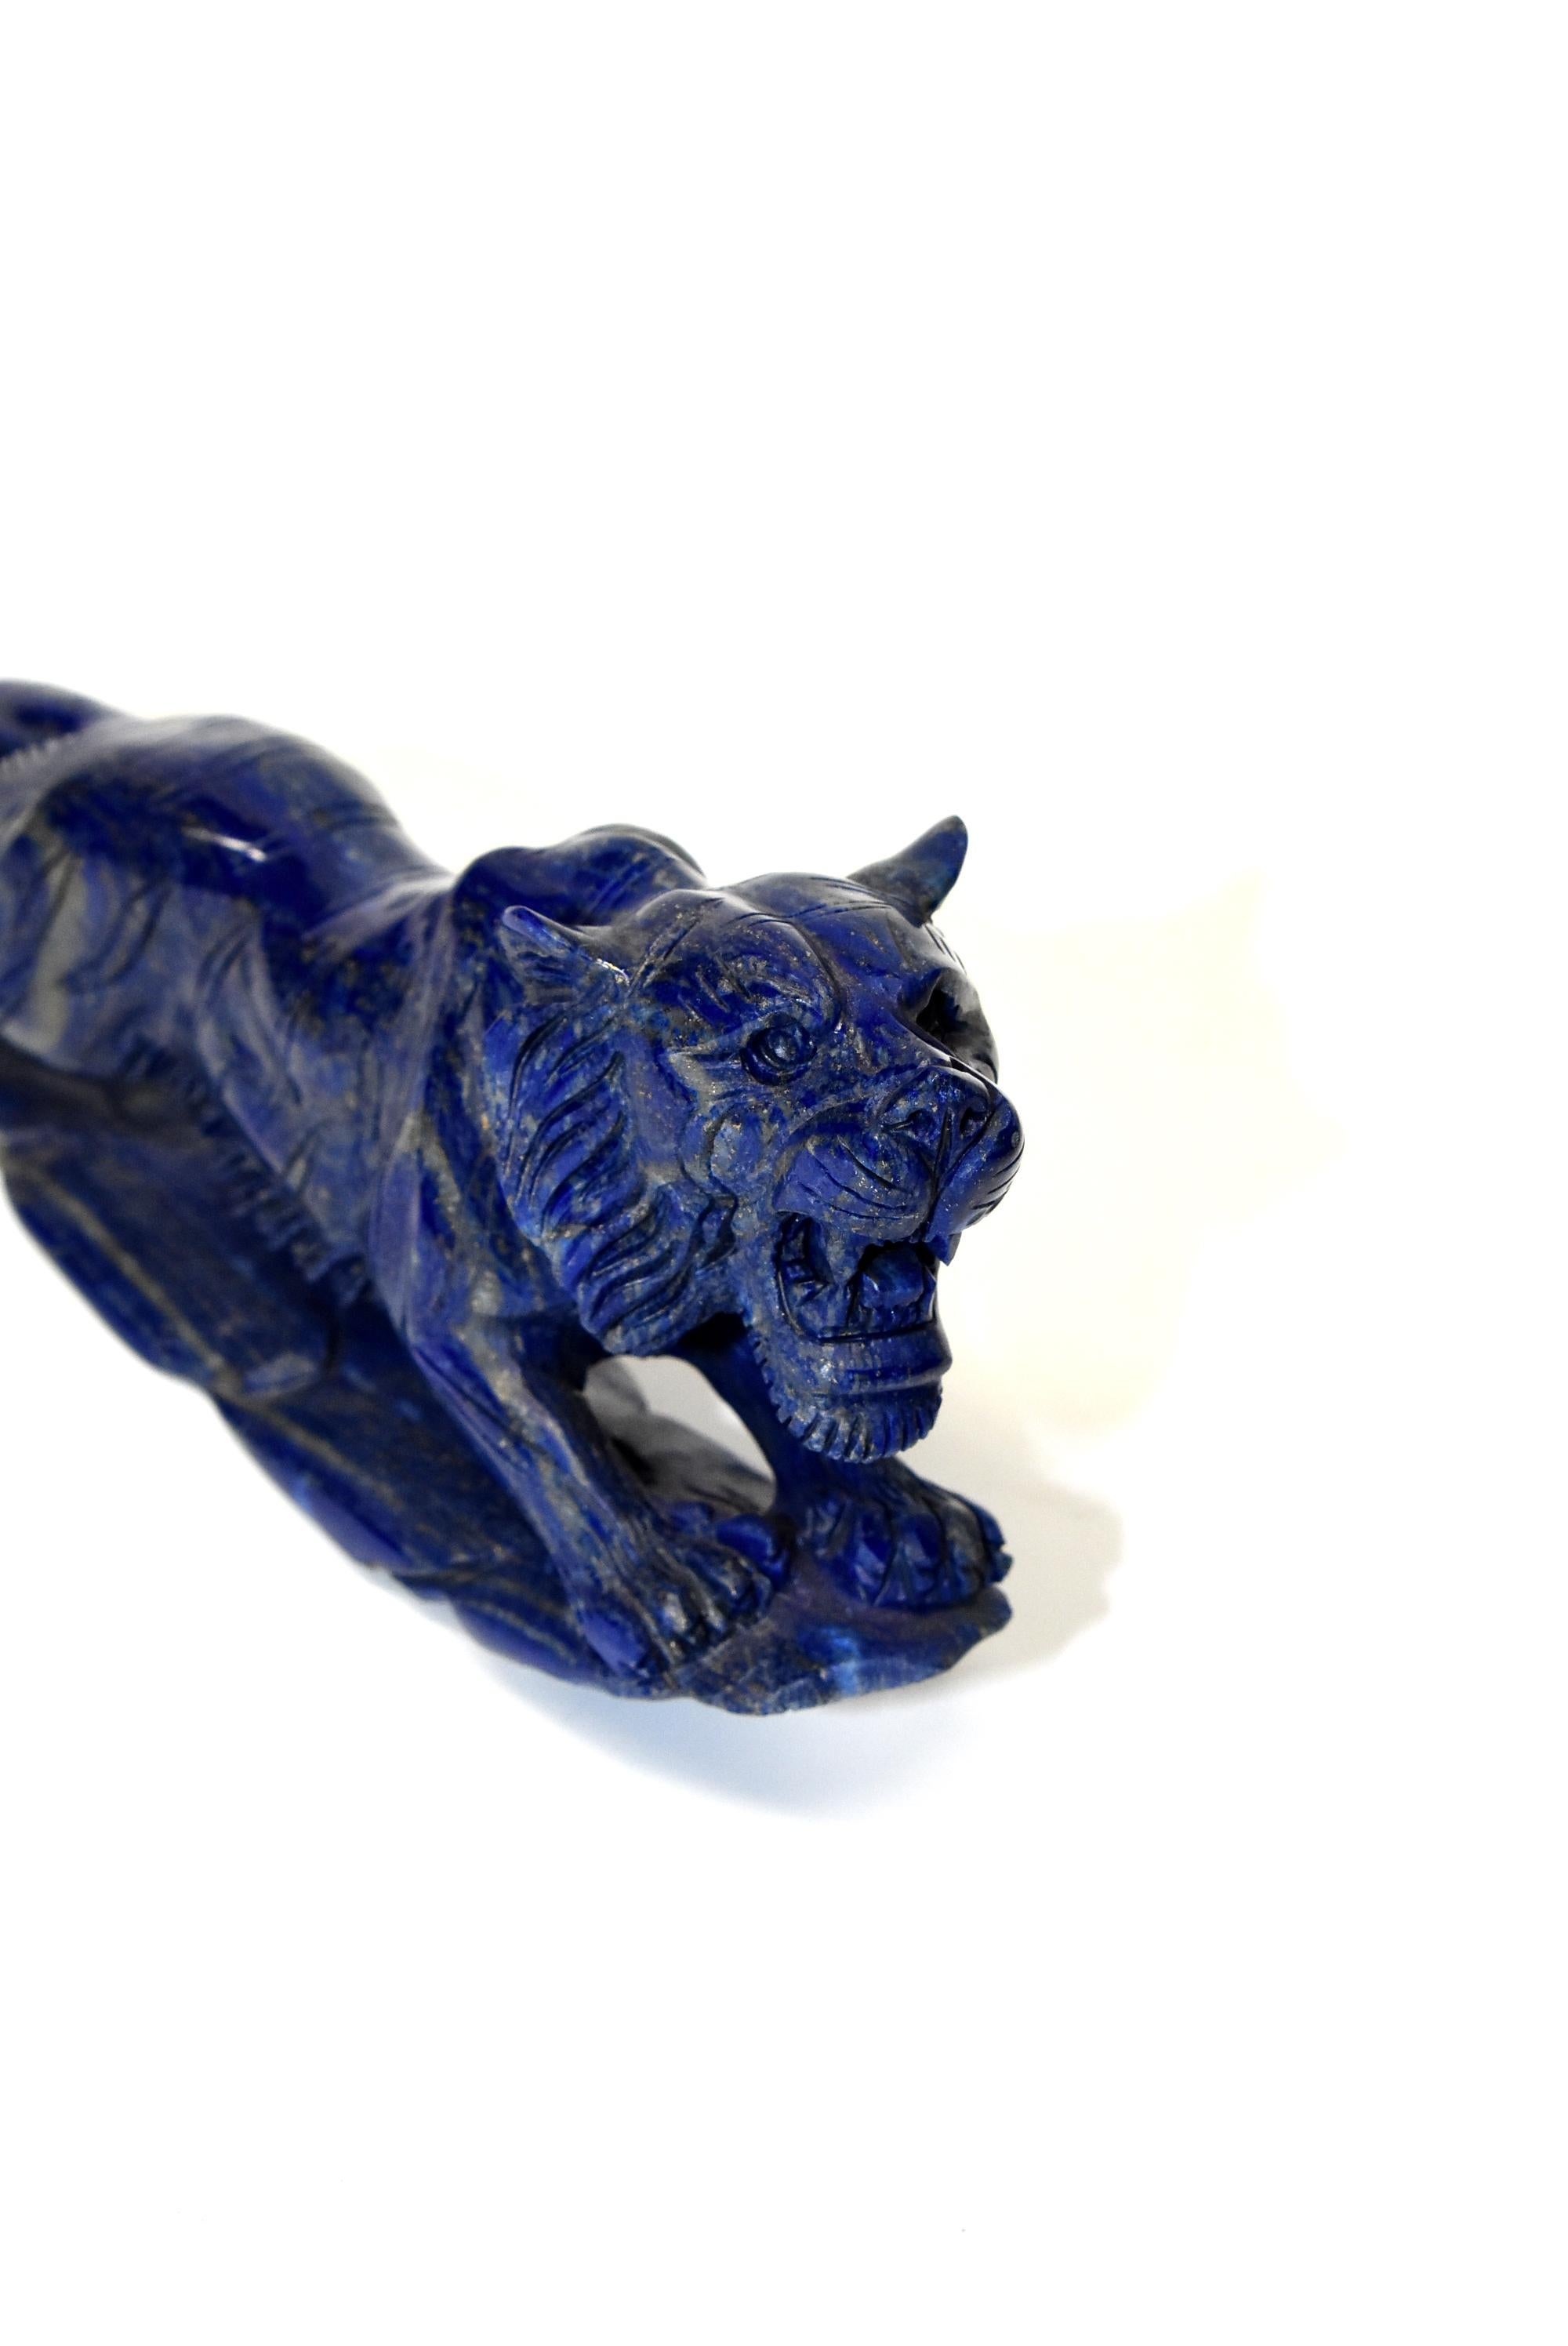 Natural Lapis Lazuli Tiger Sculpture 6